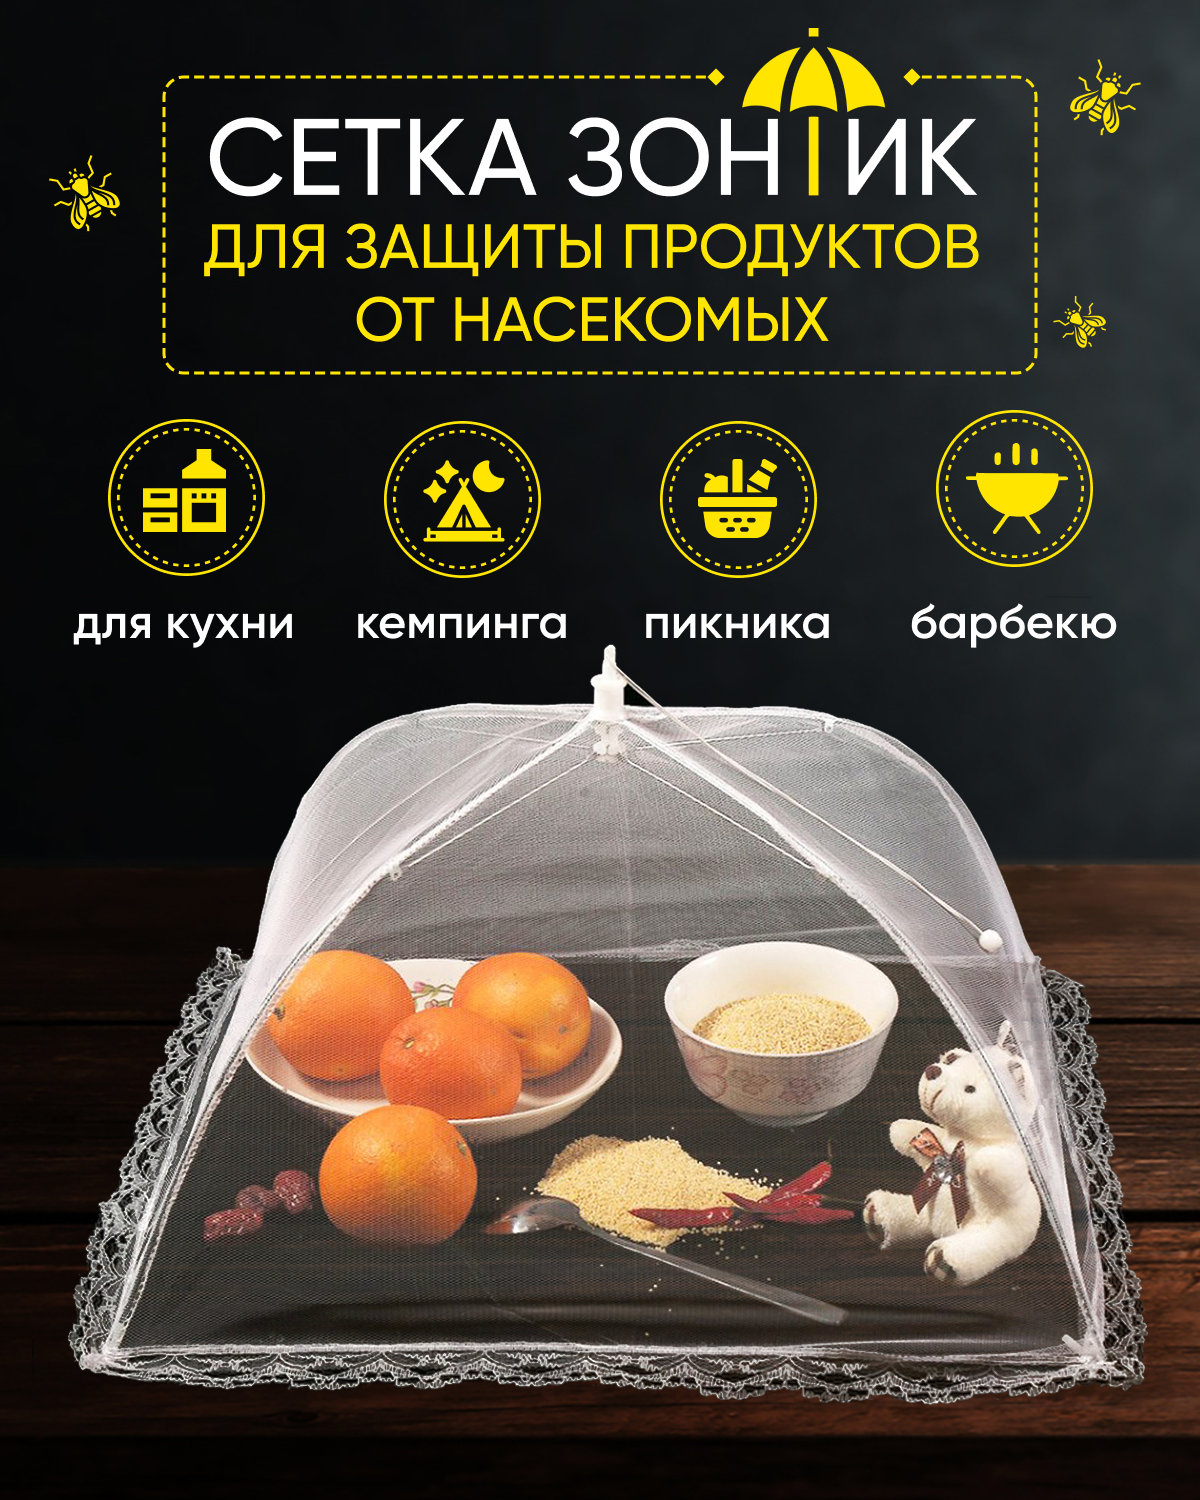 Раскладная сетка зонтик R-MAX для защиты продуктов и еды от насекомых 48 х 48 см белая